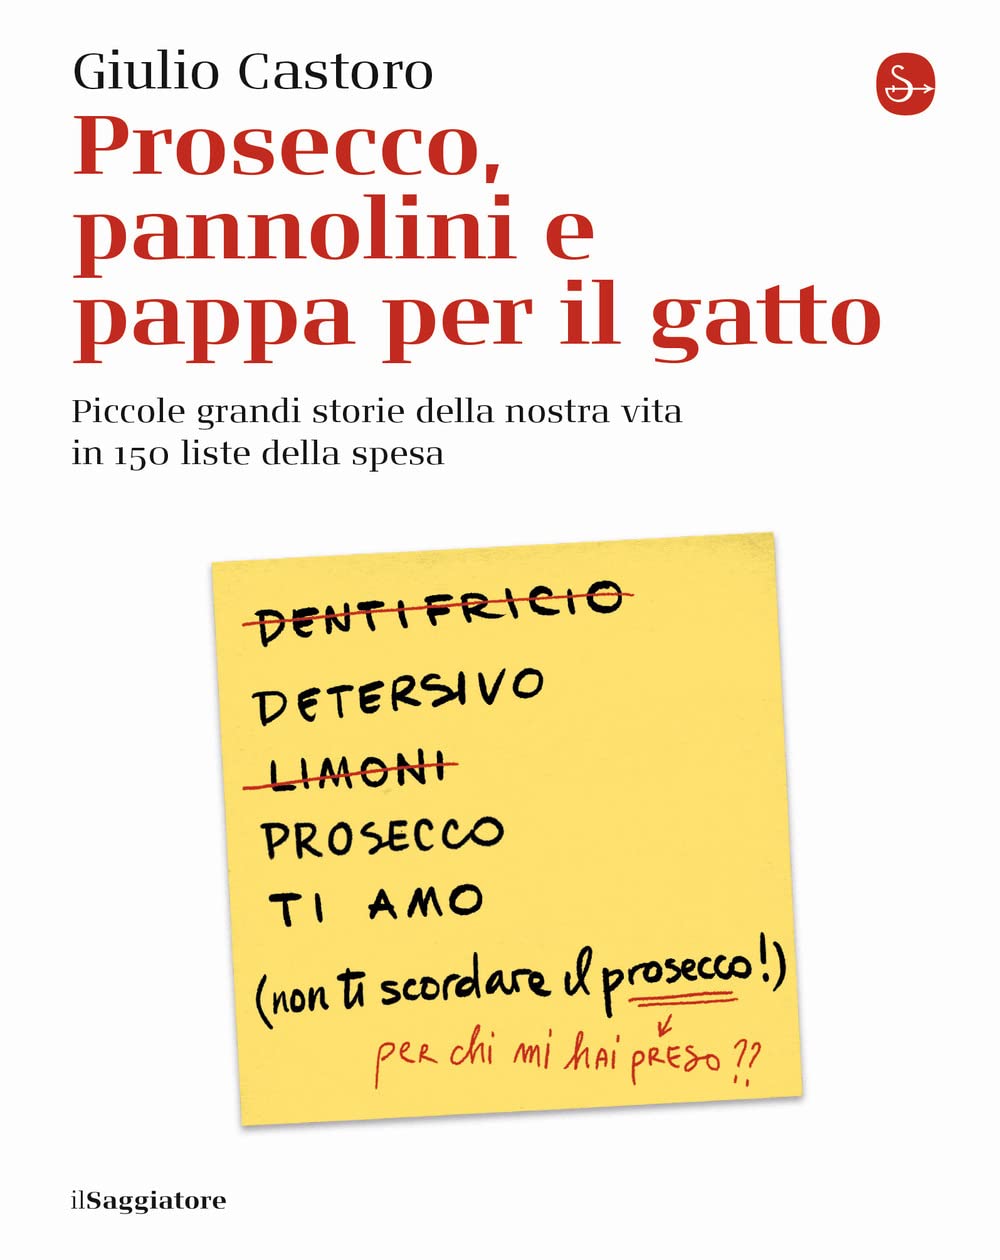 Recensione di Prosecco, Pannolini e Pappa Per Il Gatto – Giulio Castoro